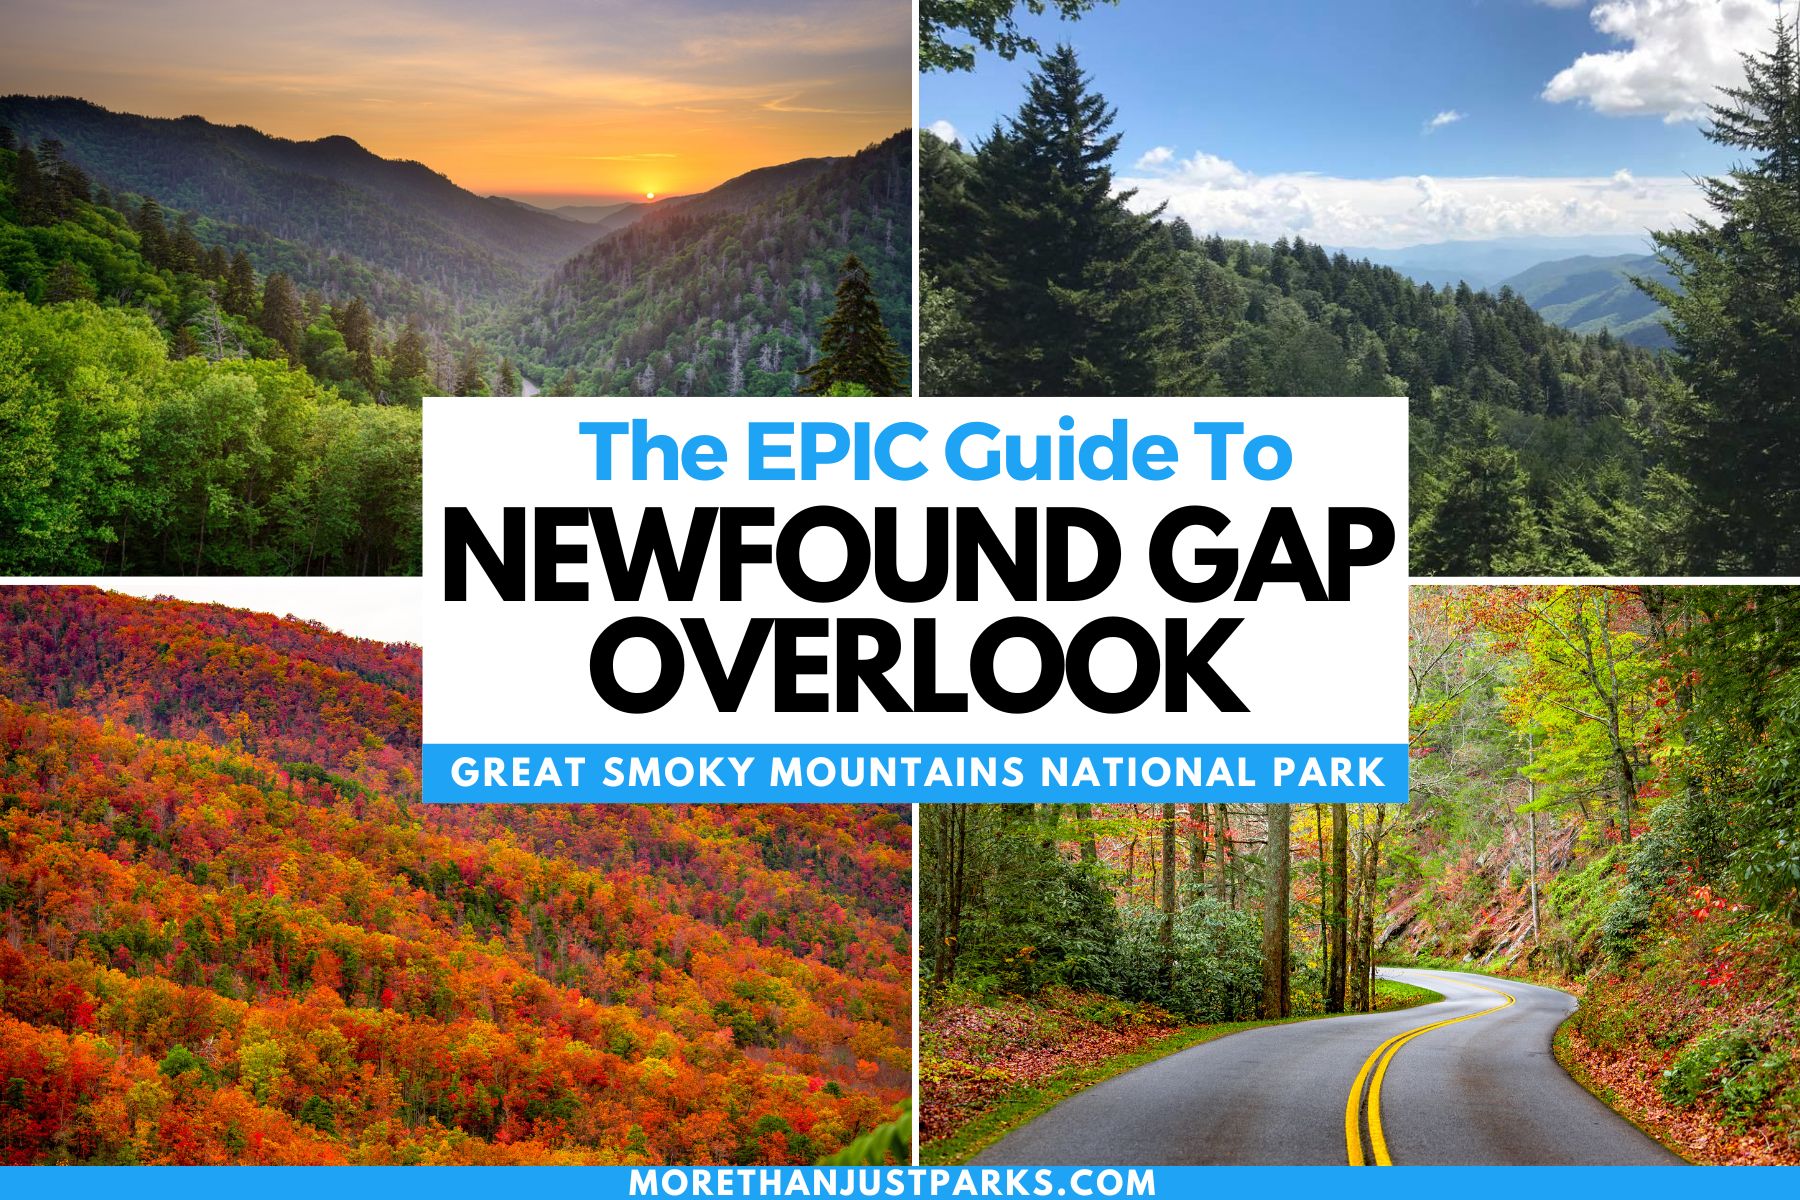 Newfound Gap Overlook Graphic